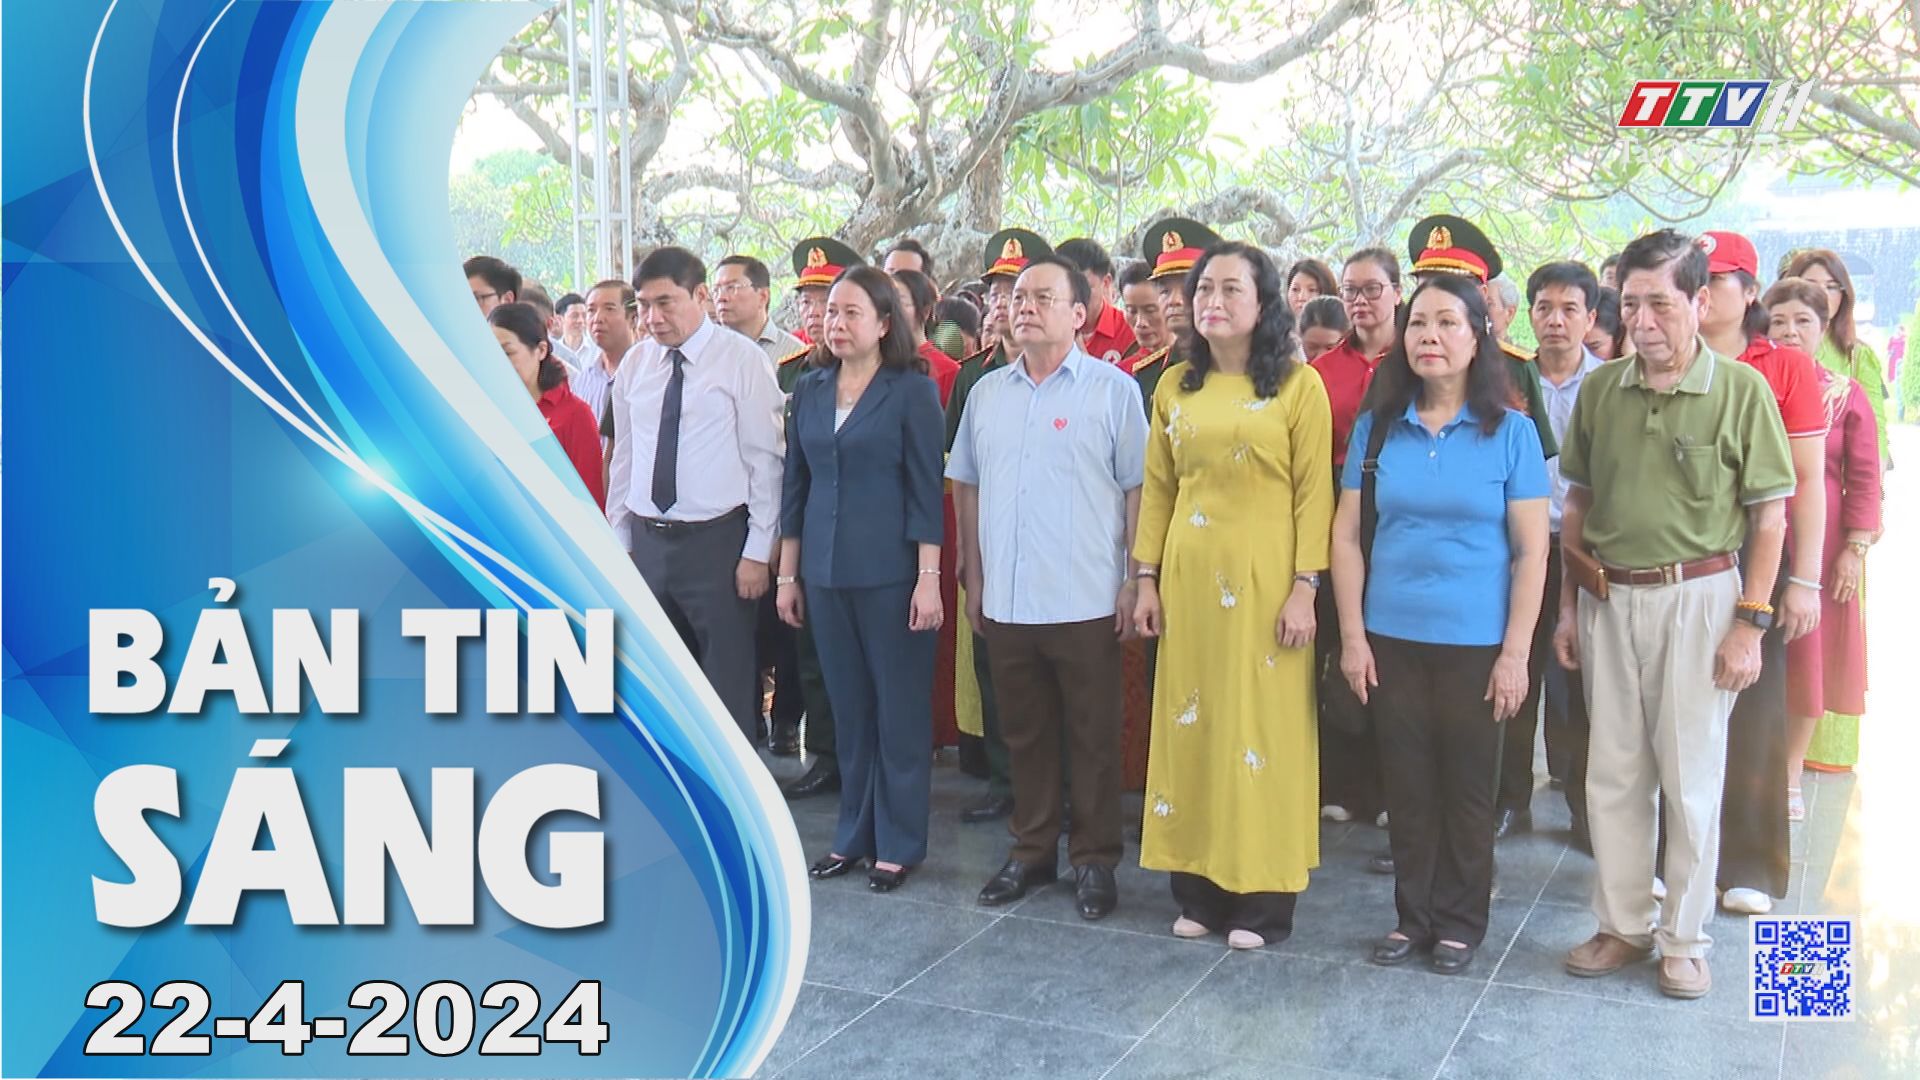 Bản tin sáng 22-4-2024 | Tin tức hôm nay | TayNinhTV